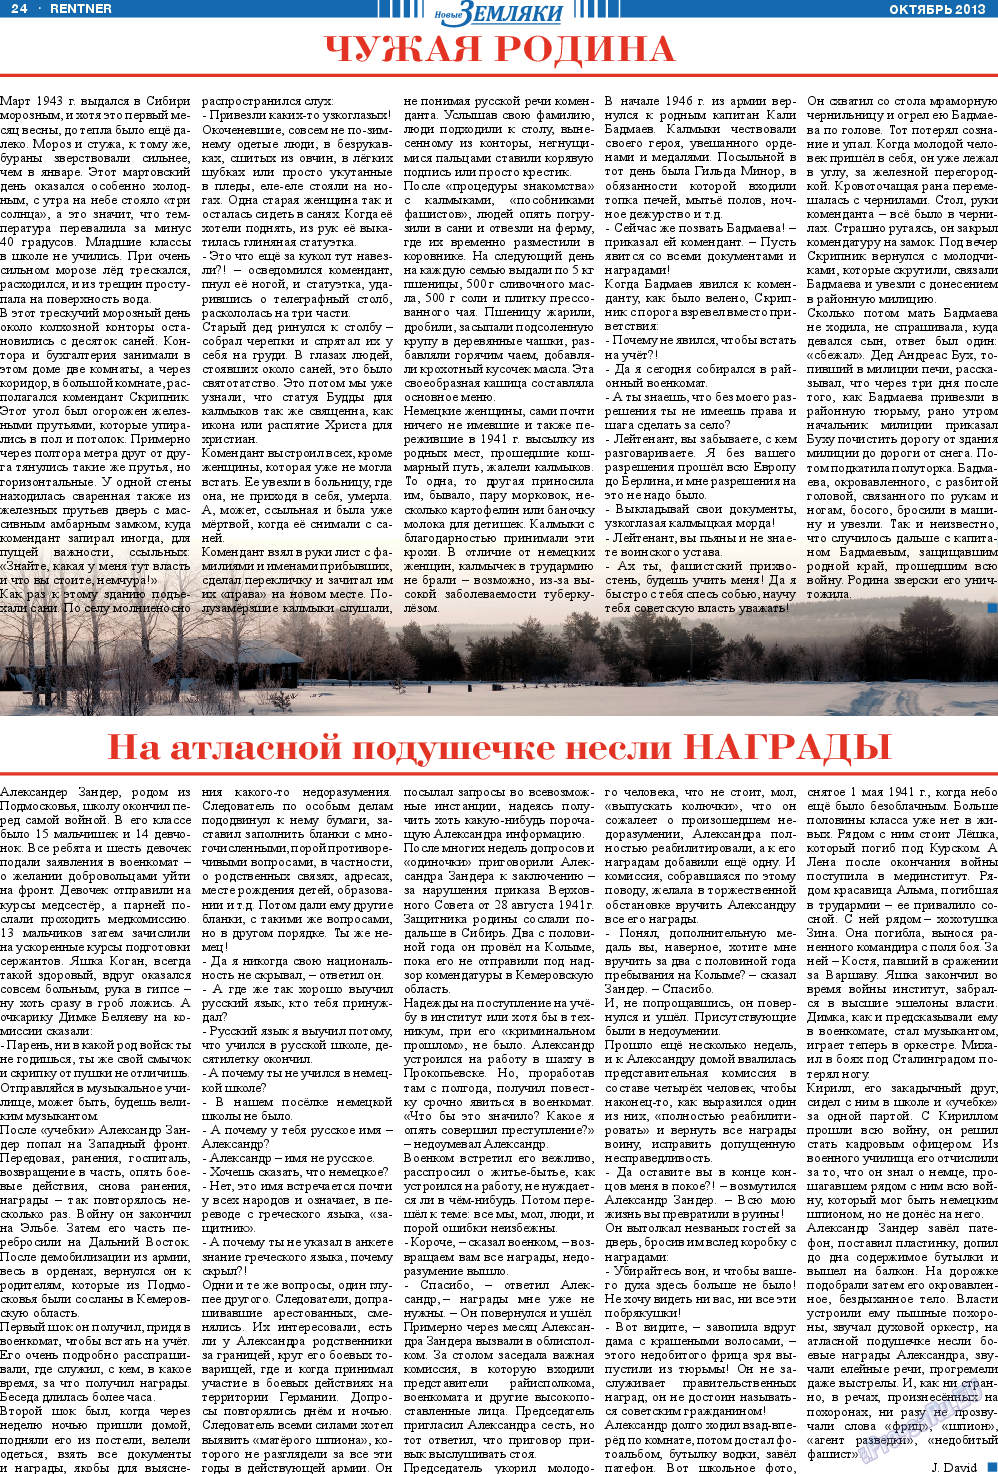 Новые Земляки, газета. 2013 №10 стр.24